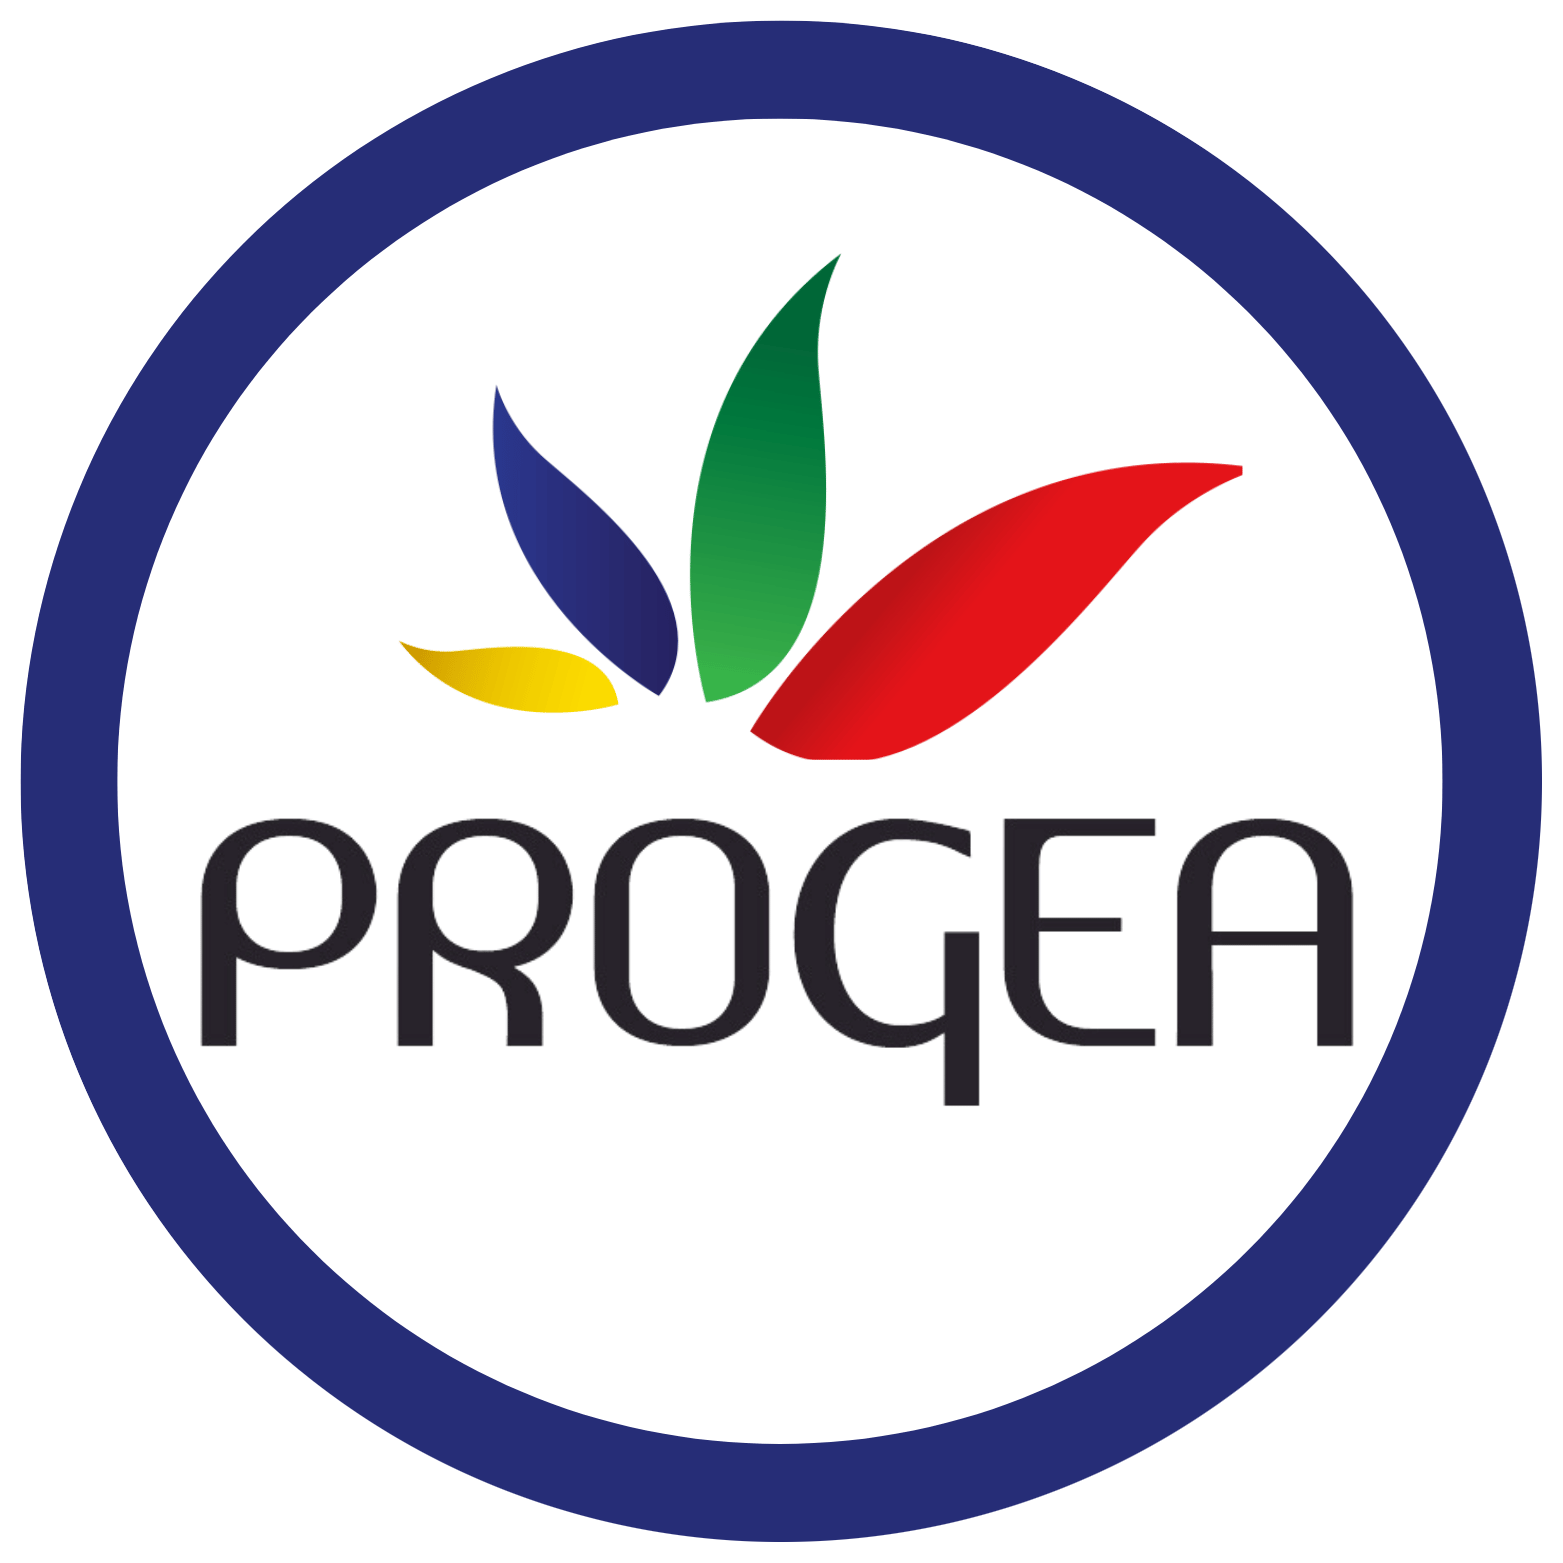 LOGO-PROGEA_hd